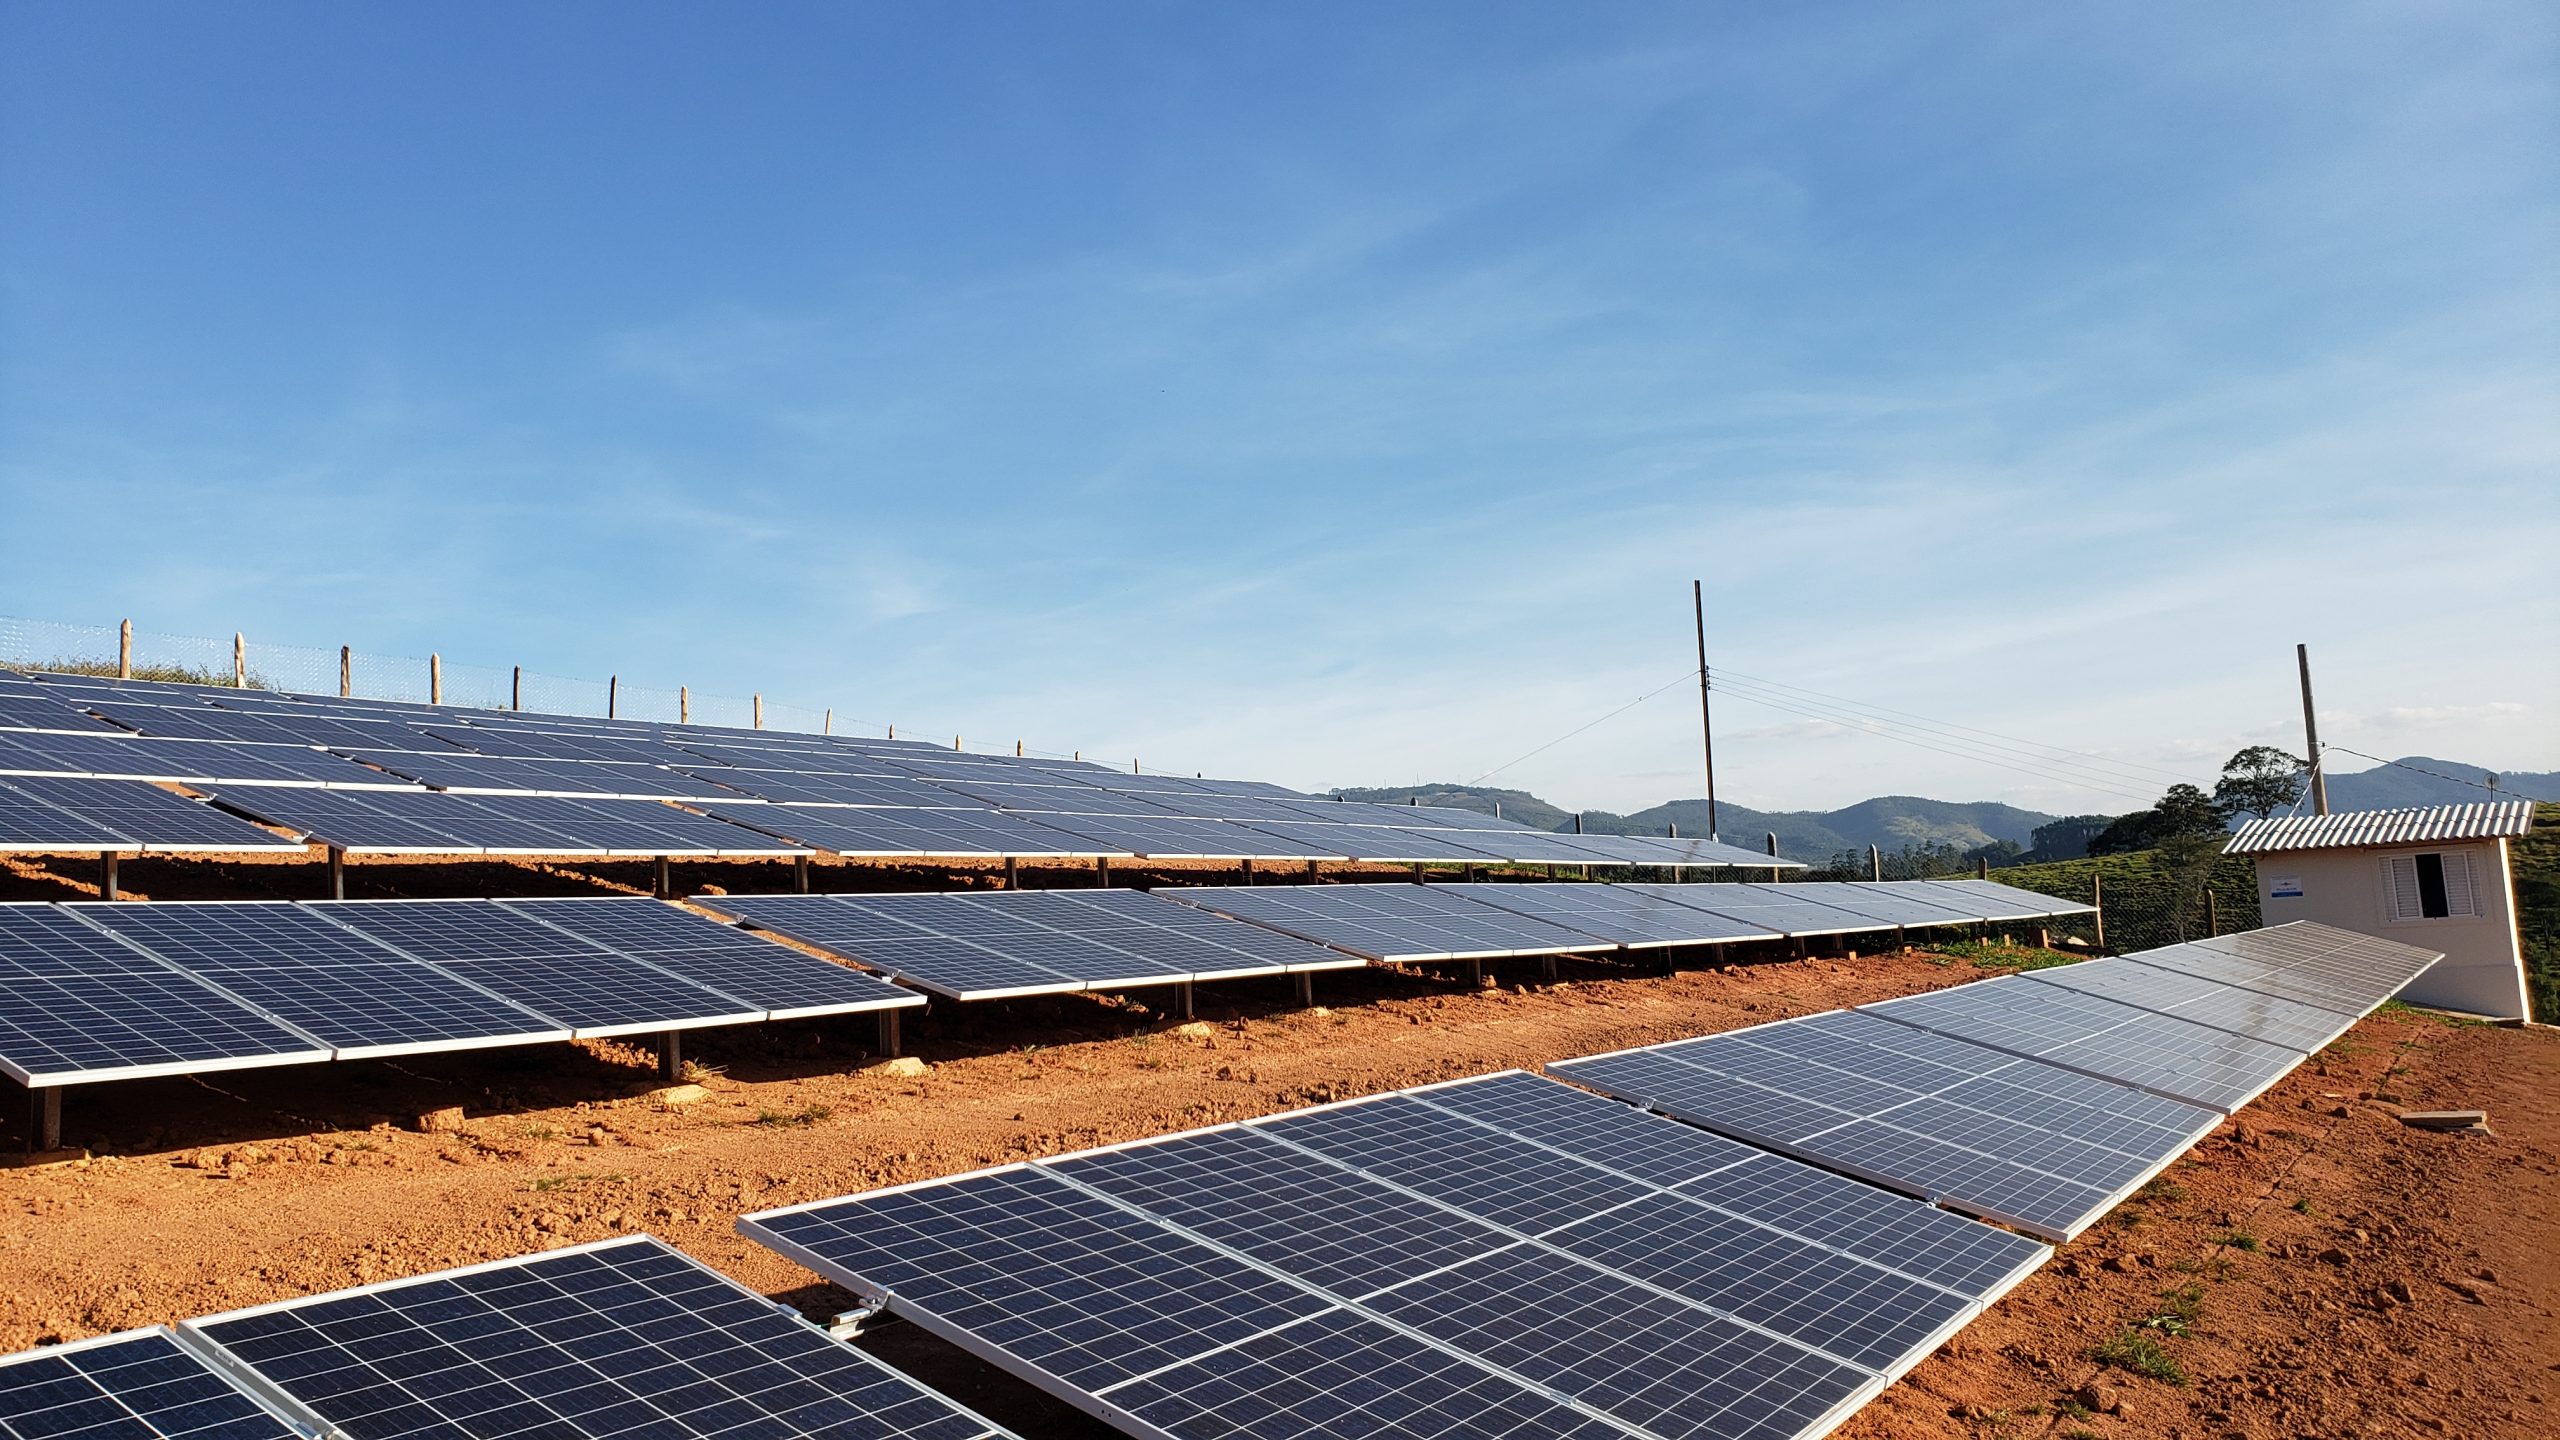 Demanda por equipamentos fotovoltaicos deve aumentar com o crescimento no número de projetos de GC. Foto: Monclair Araujo